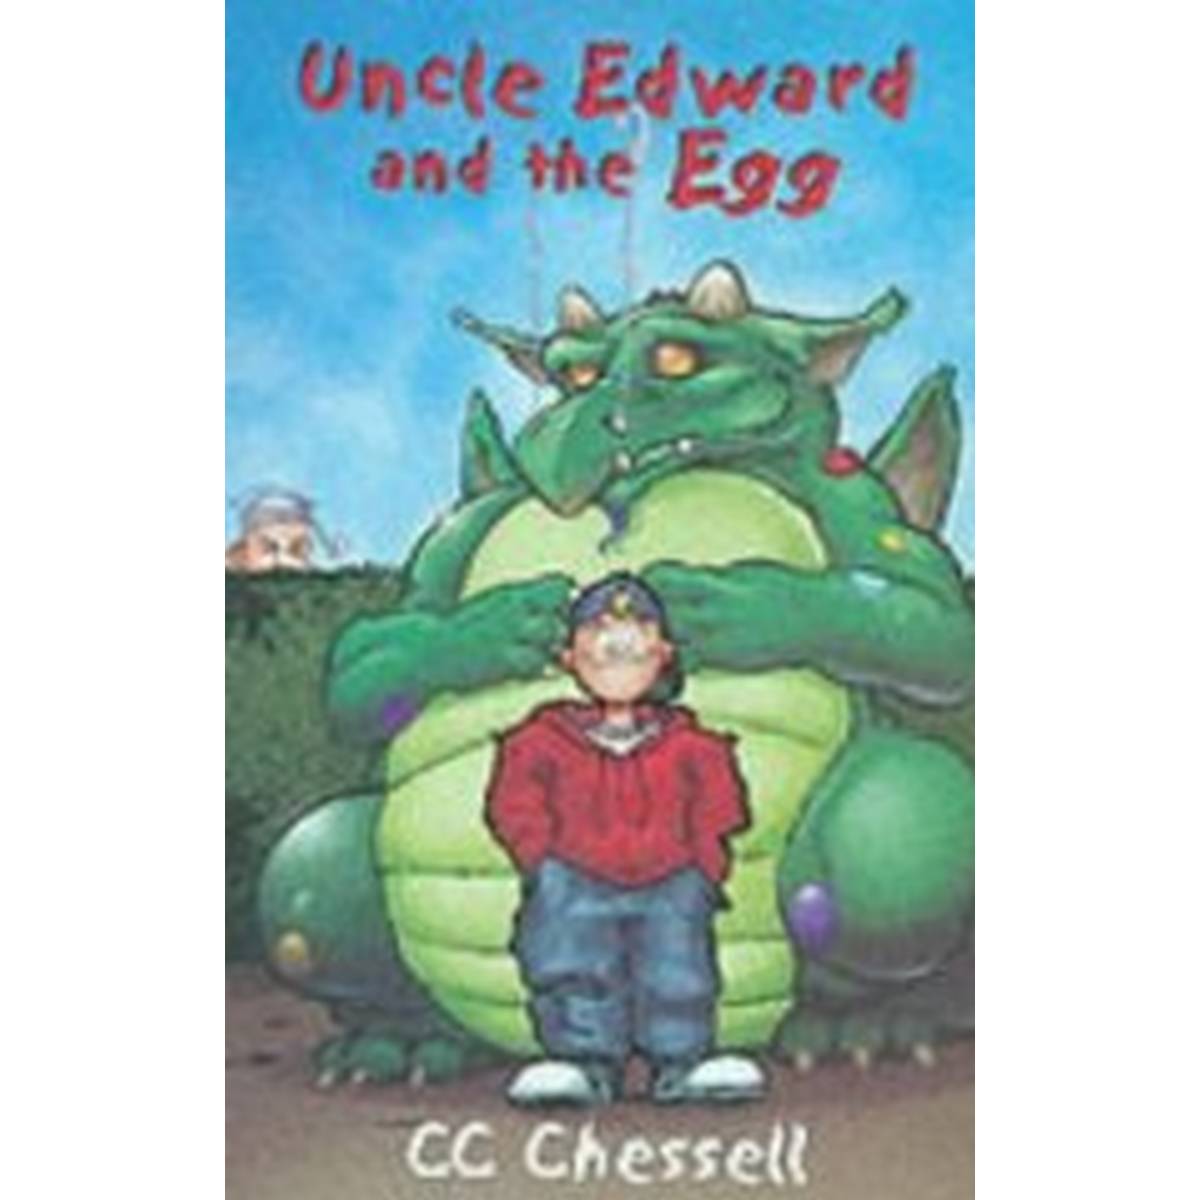 Uncle Edward & Egg